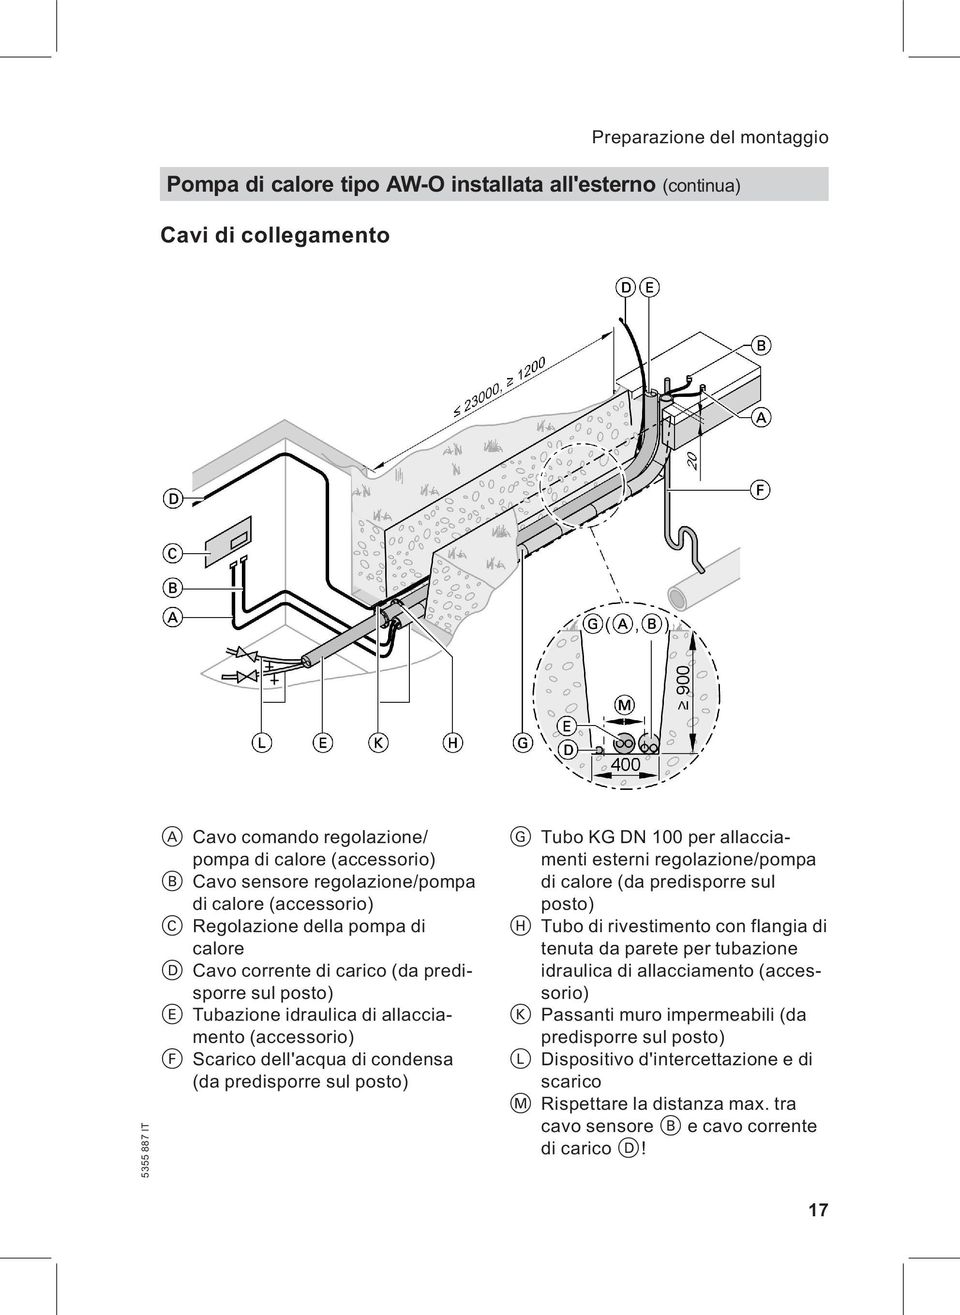 (da predisporre sul posto) G Tubo KG DN 100 per allacciamenti esterni regolazione/pompa di calore (da predisporre sul posto) H Tubo di rivestimento con flangia di tenuta da parete per tubazione